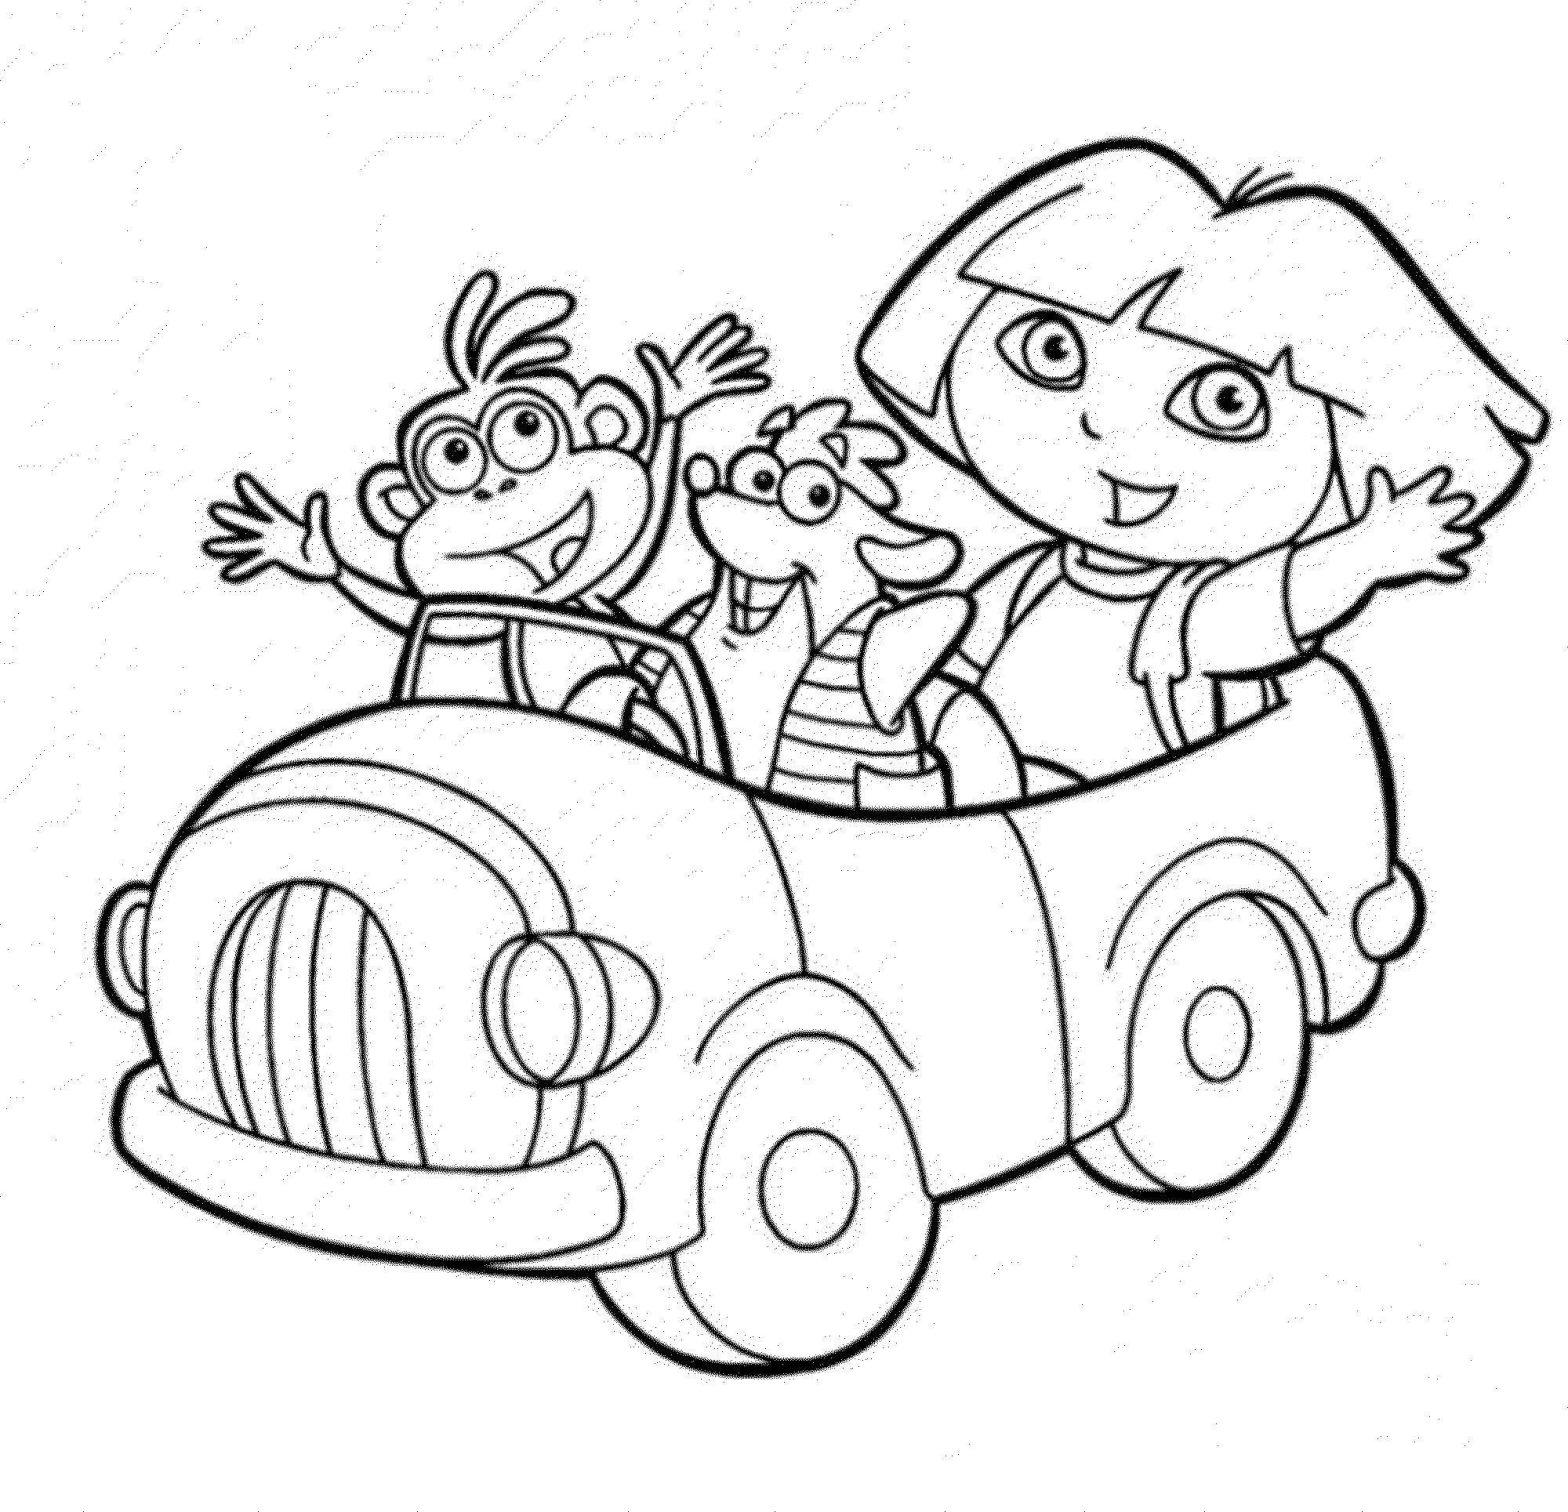 Раскраска с персонажами мультфильма Даша Путешественница и Башмачок (Башмачок)